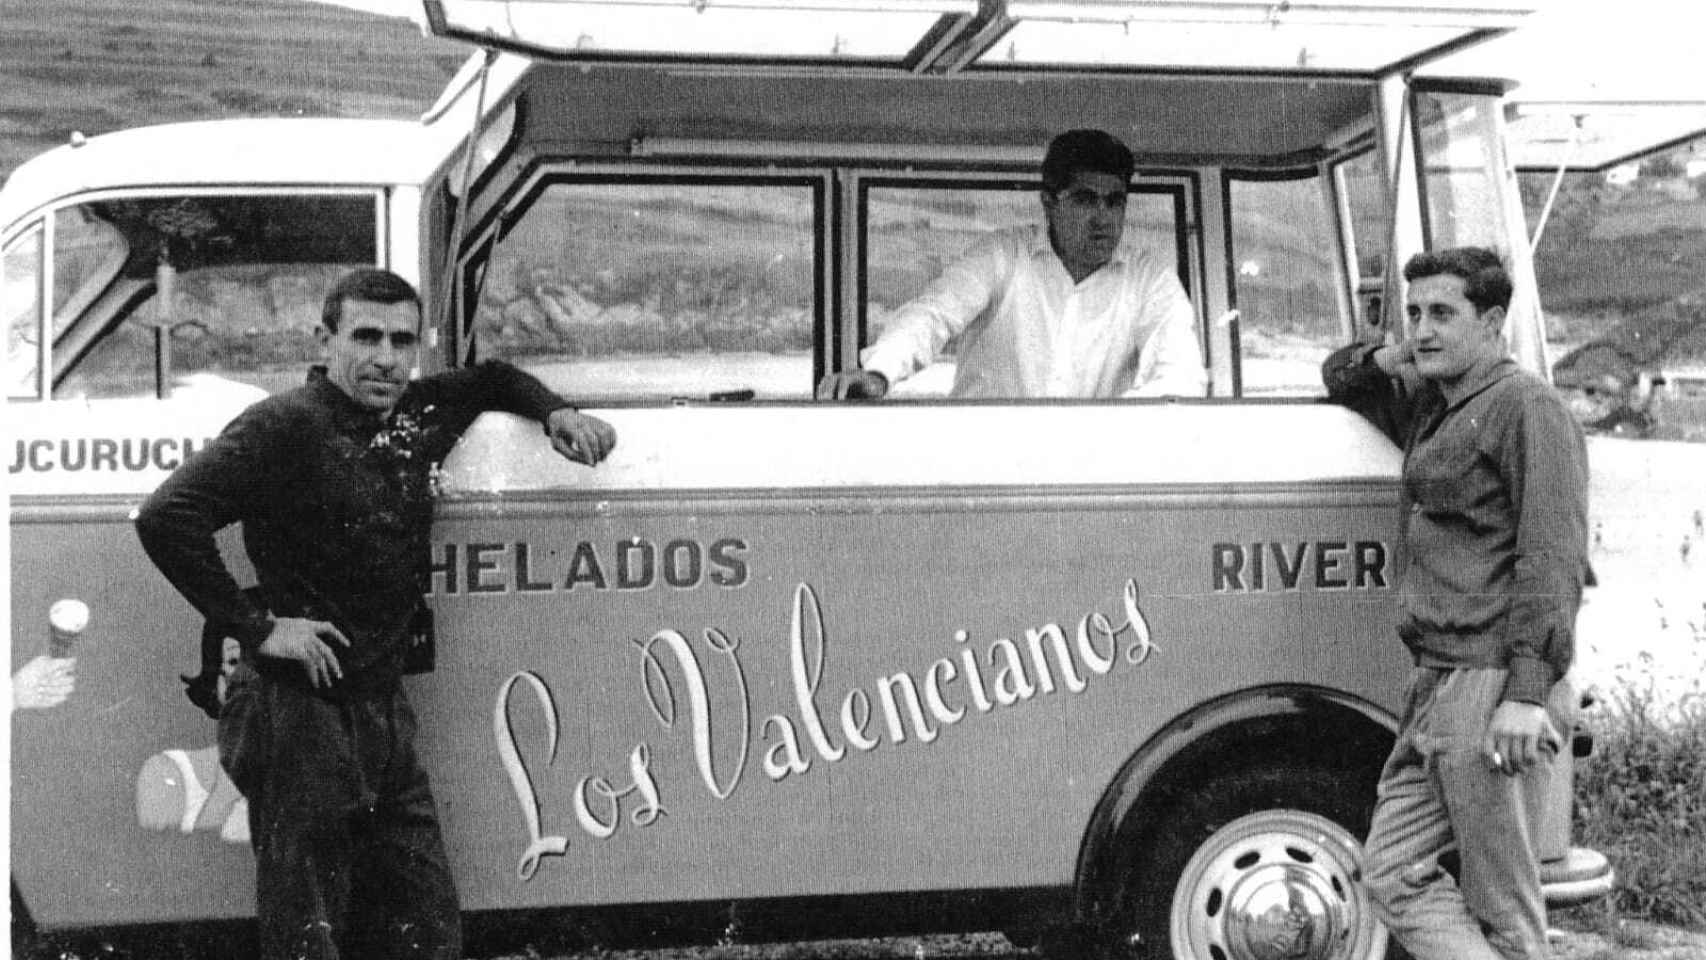 Helados Los Valencianos, socios asturianos de Alacant.